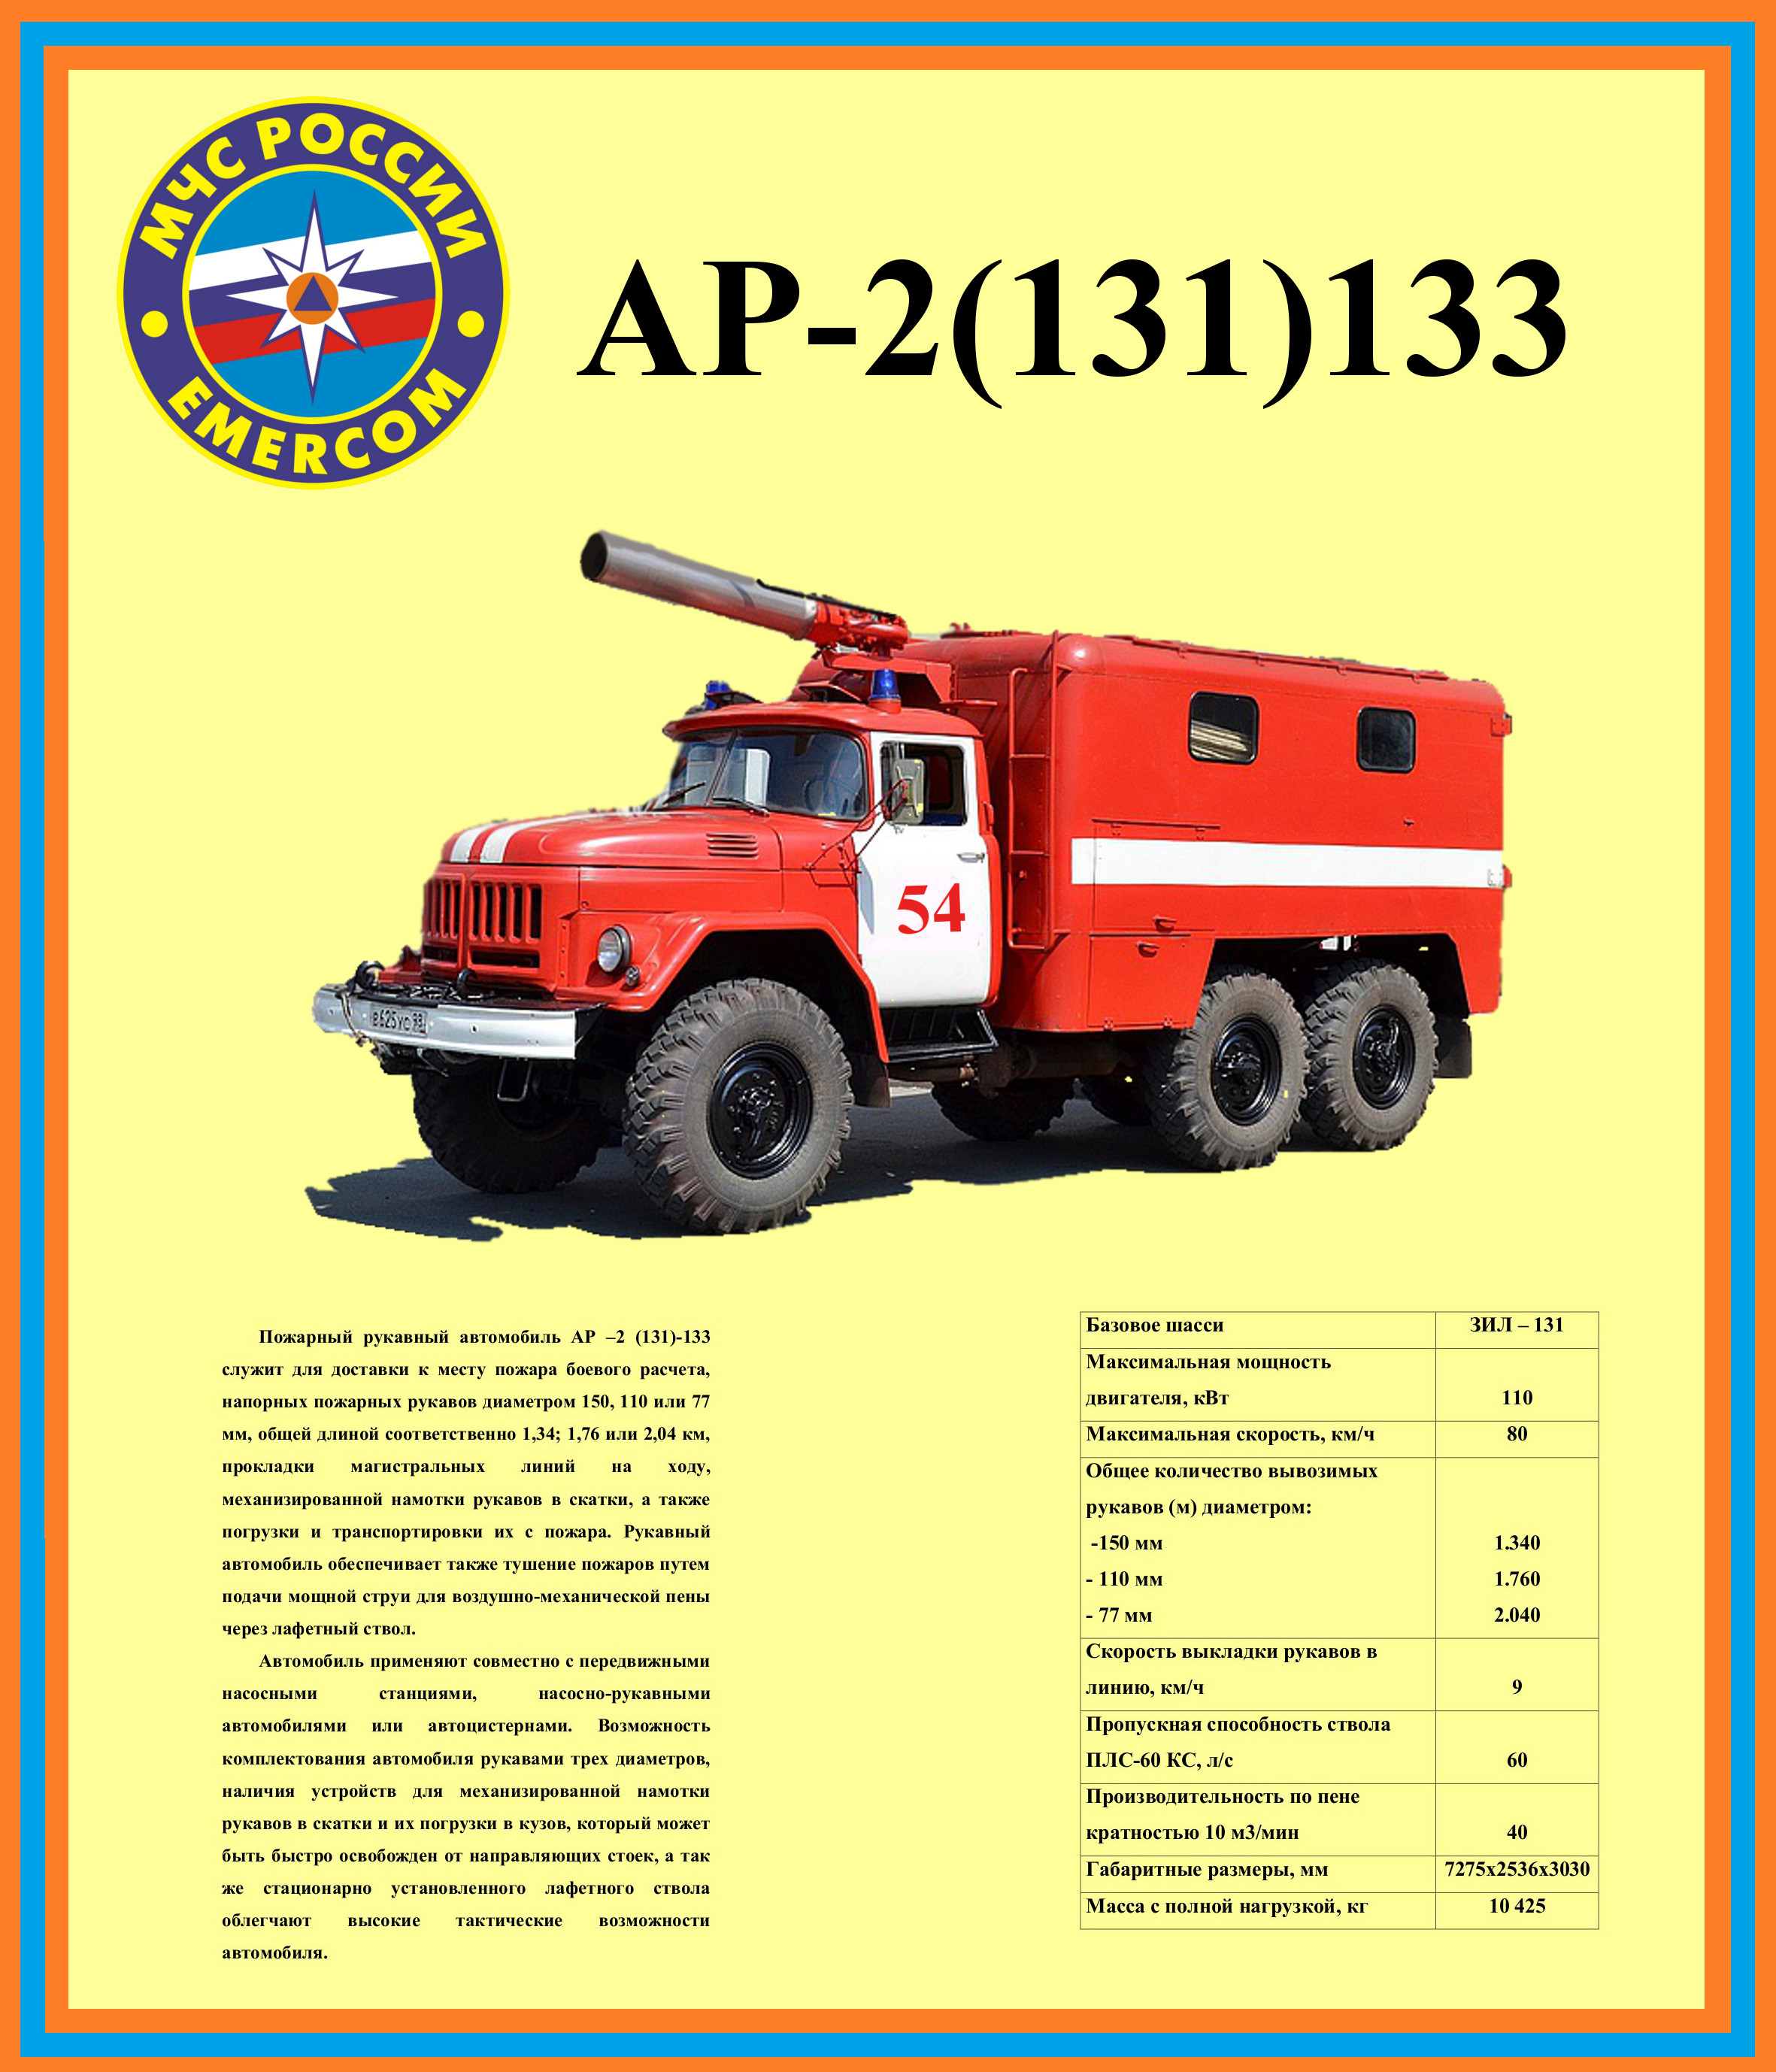 Сколько весит зил 131. Ар-2 пожарный автомобиль ТТХ ЗИЛ 131. ТТХ ЗИЛ 131 пожарный. ТТХ ЗИЛ 130 пожарный автомобиль. ЗИЛ 131 пожарный технические характеристики.